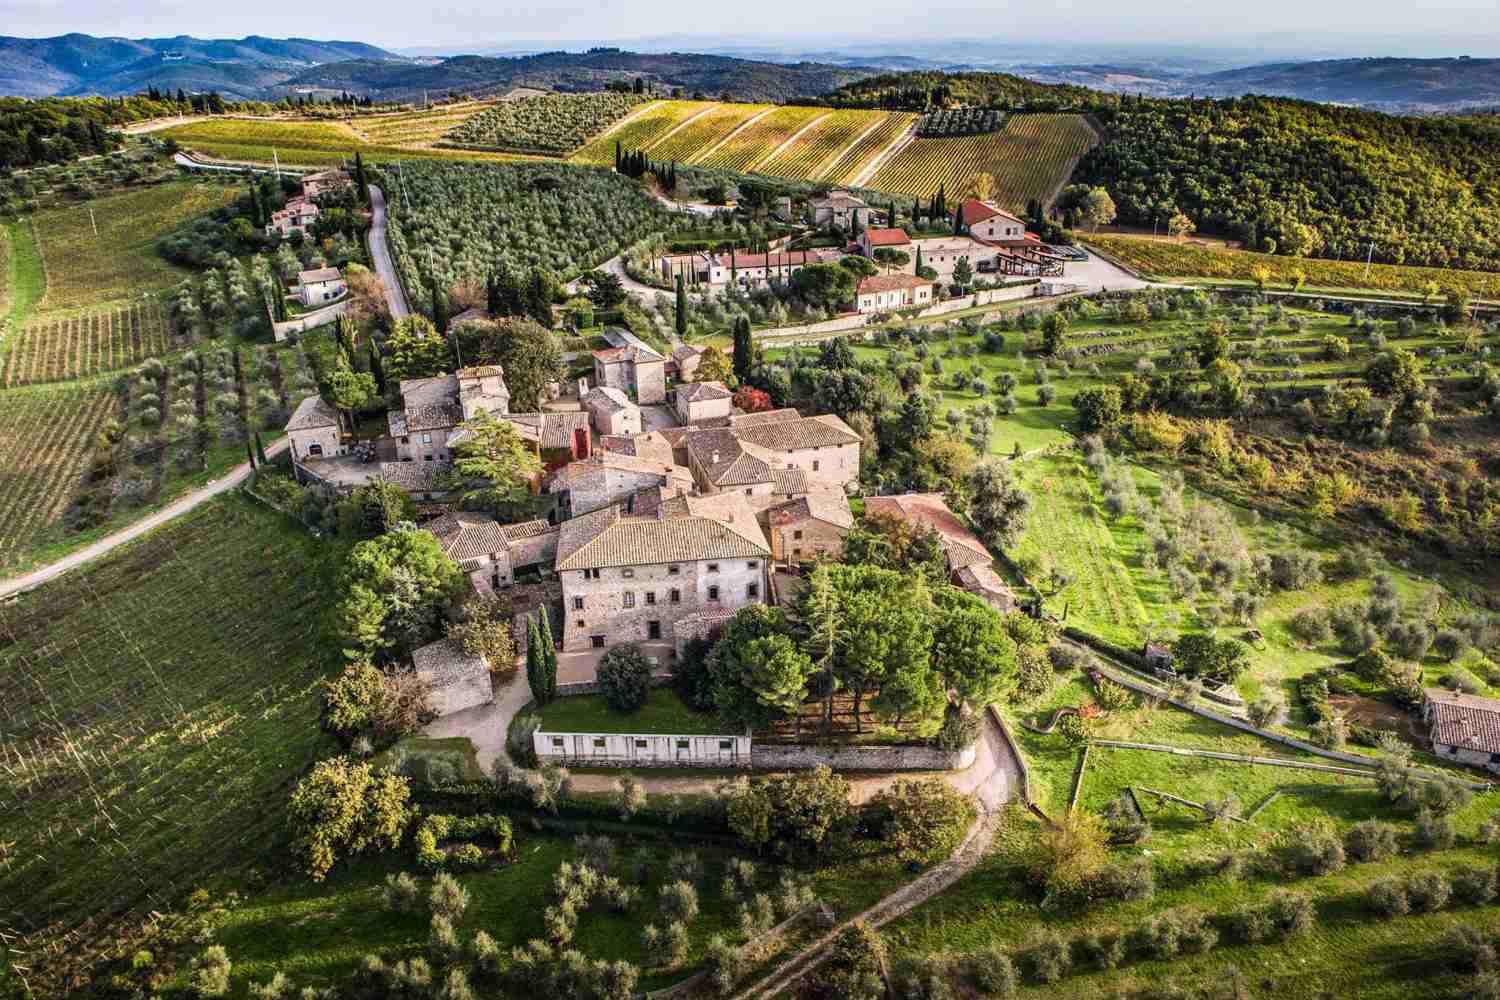 Castello di Ama Chianti, Tuscany - Italy